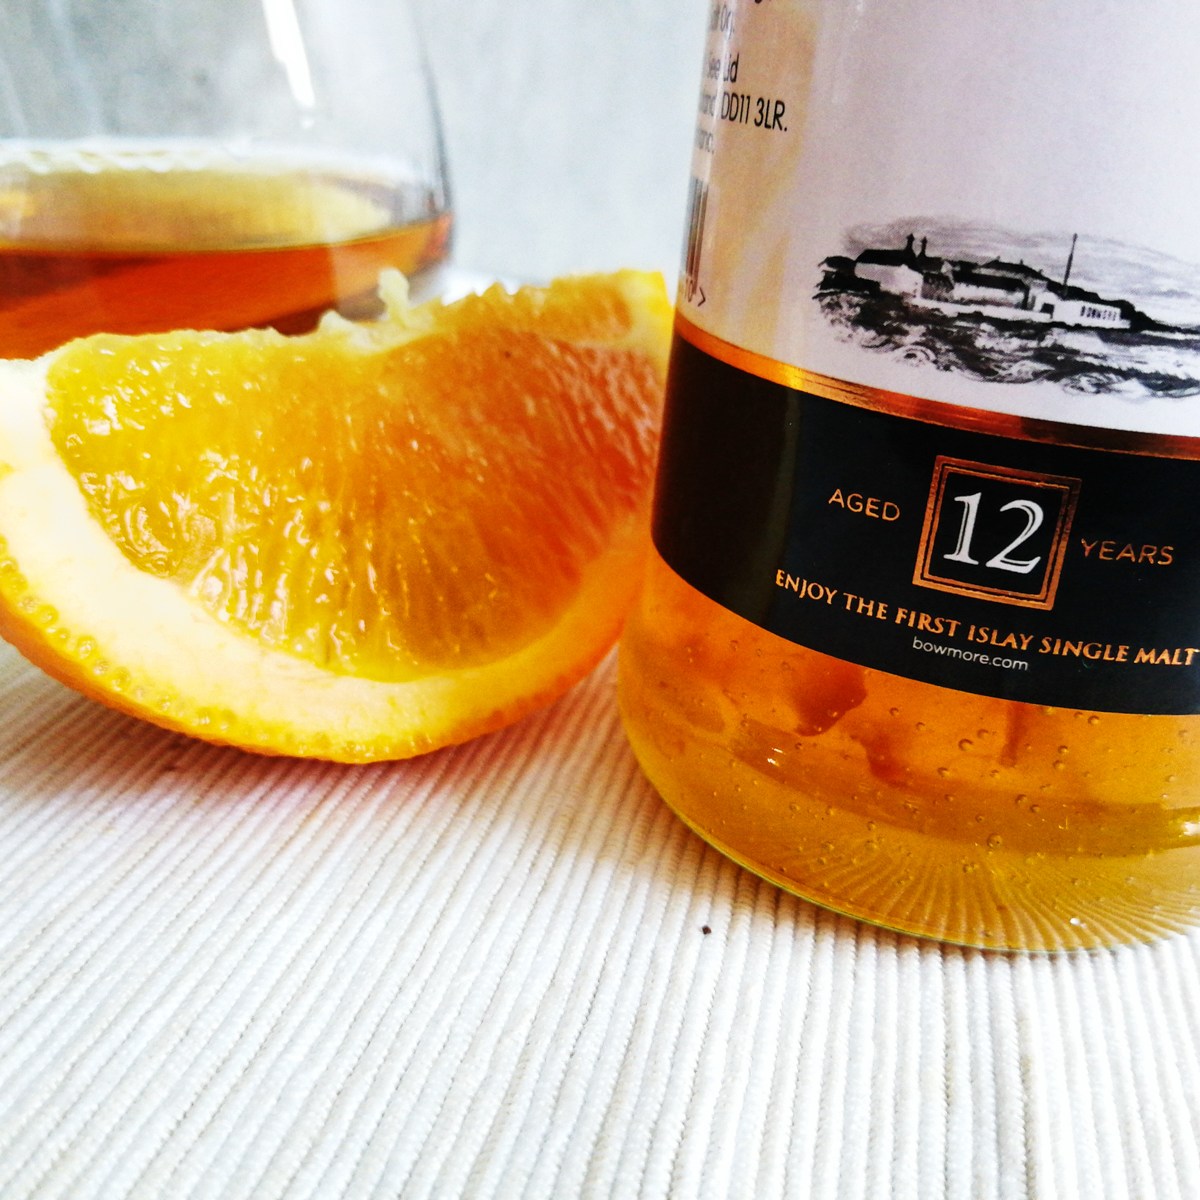 Pomerančová zavařenina s příměsí 12 lete whisky Bowmore 340g